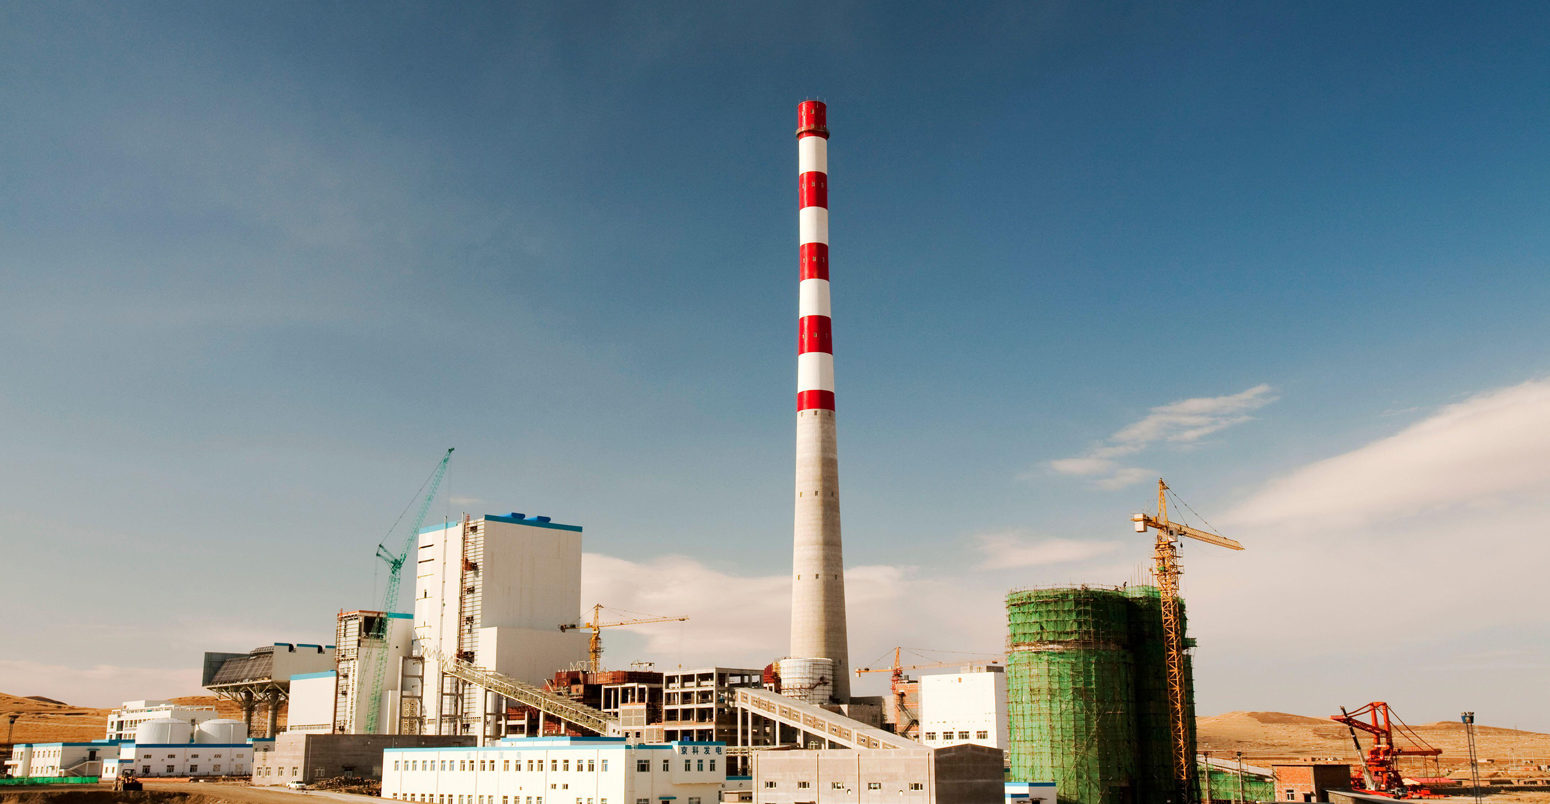 中国内蒙古正在建设燃煤电厂。资料来源:自然图片库/阿拉米图片库